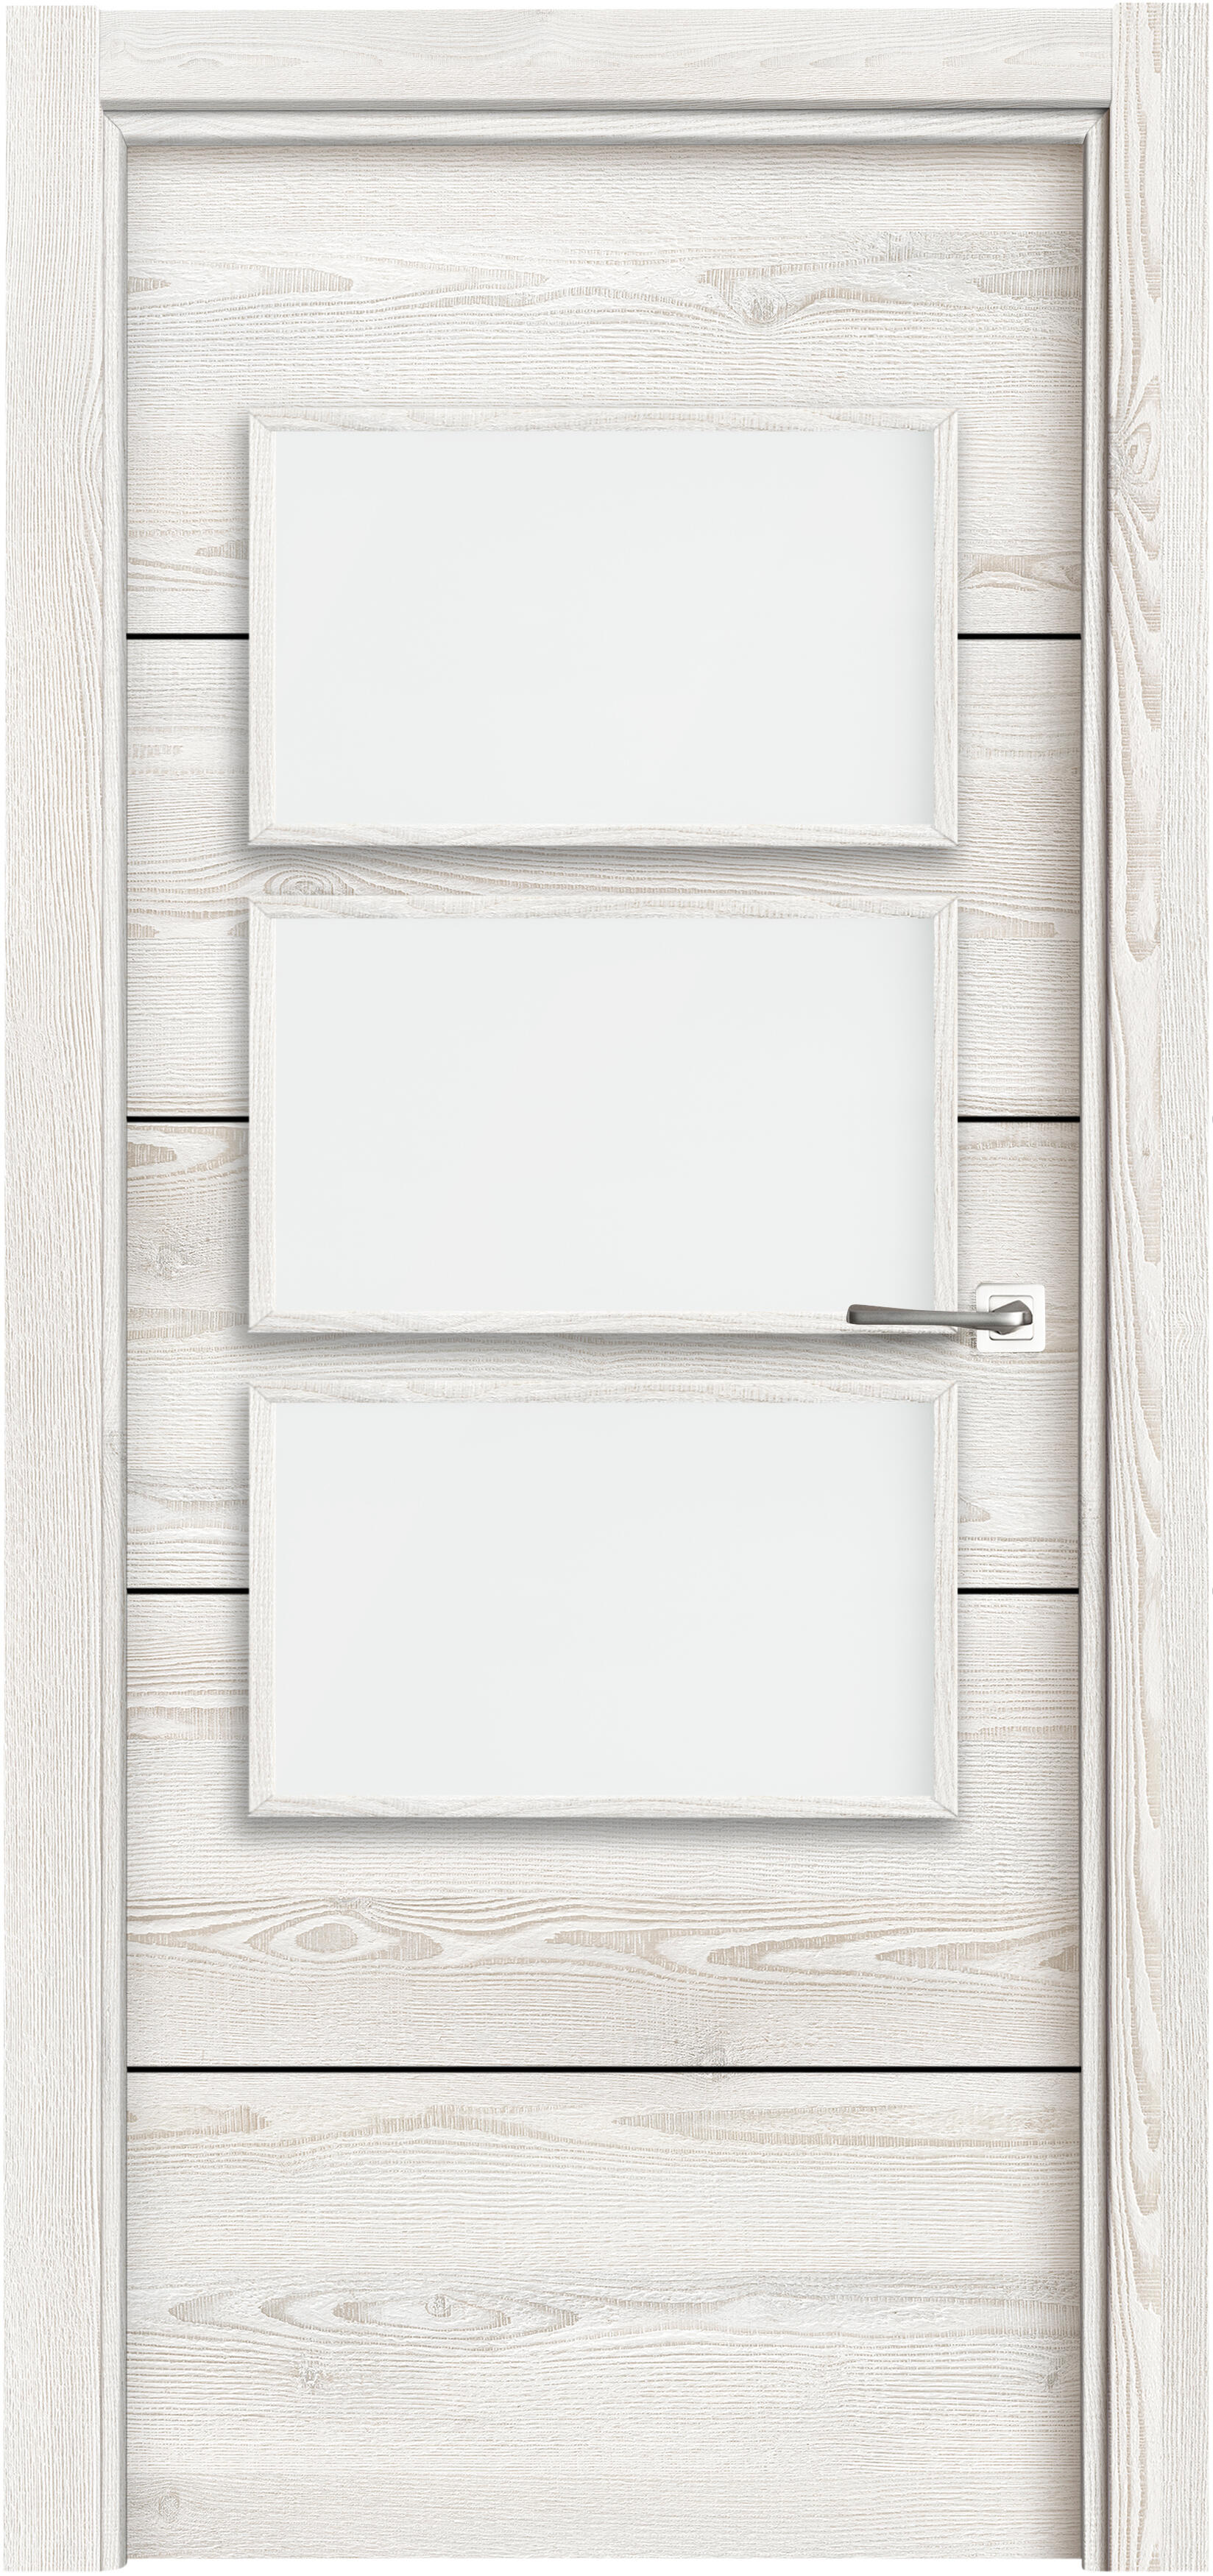 Puerta berna blanco apertura izquierda con cristal 82.5cm